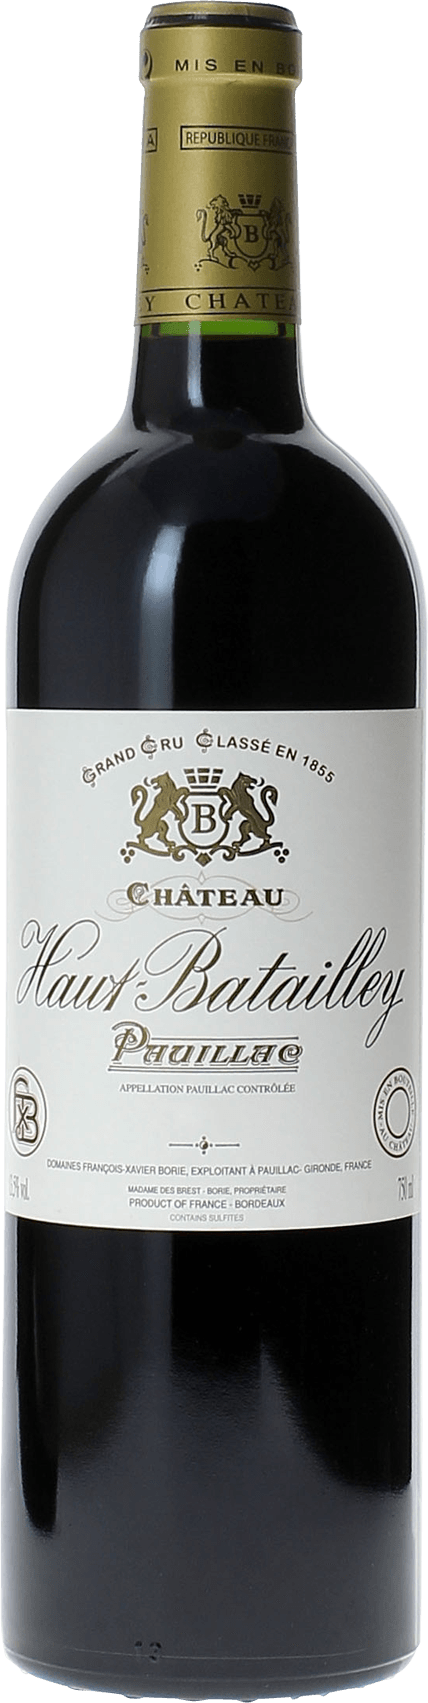 Haut batailley 1995 5 me Grand cru class Pauillac, Bordeaux rouge